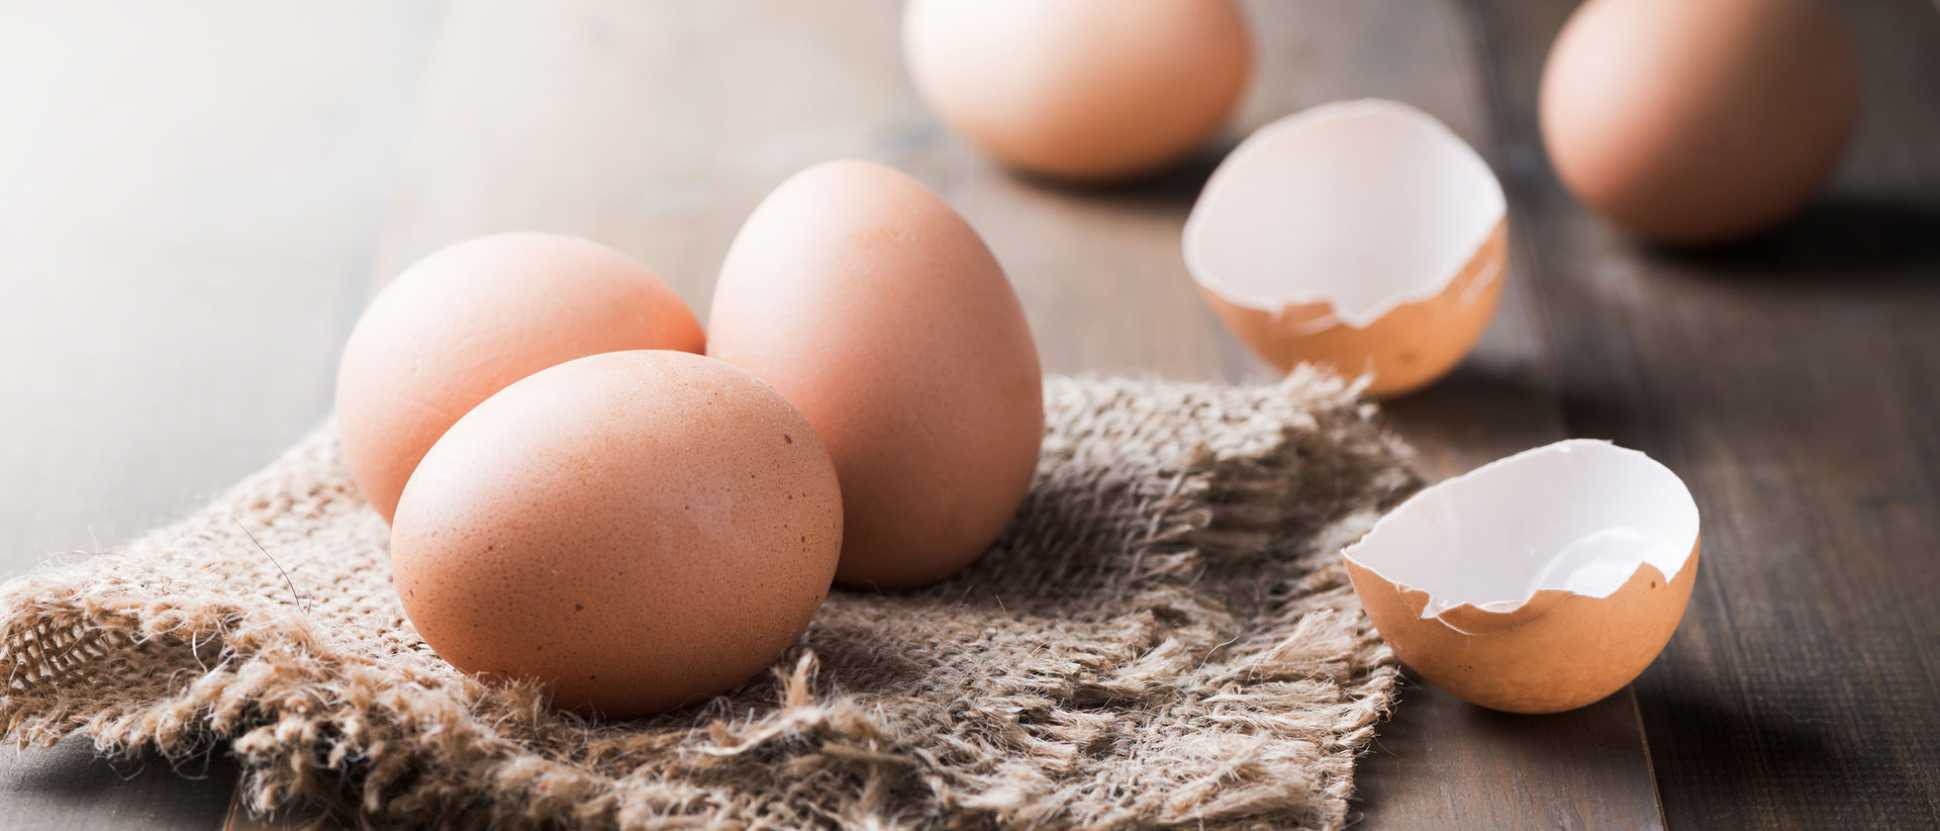 161124-Eggs-boost-vitamin-E-absorptionjpg